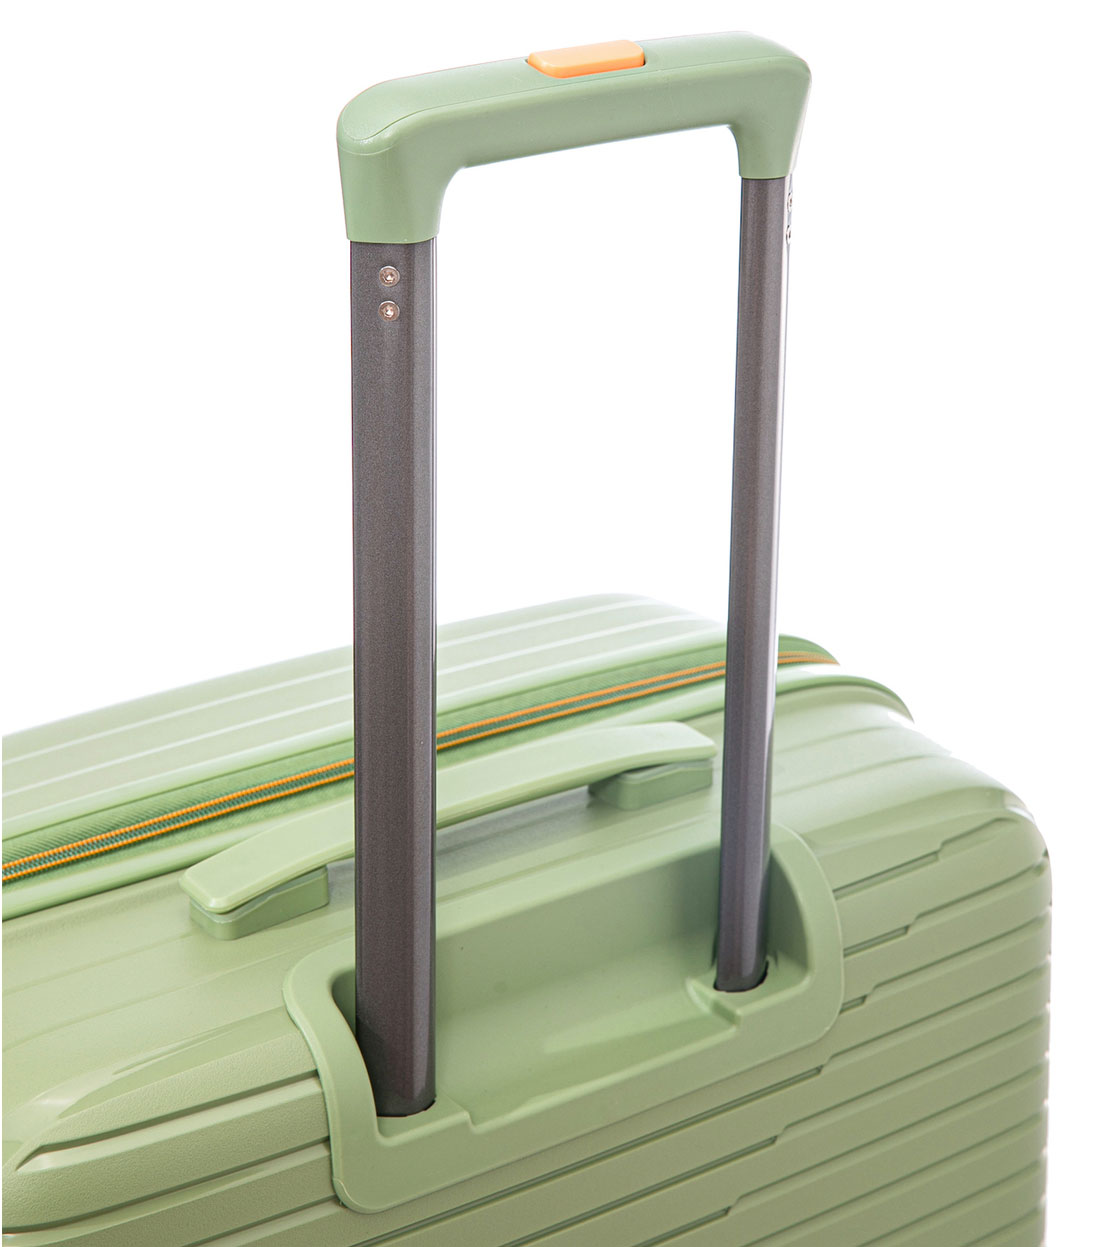 Средний чемодан Somsonya PP Singapore M (66 см) Pistachio